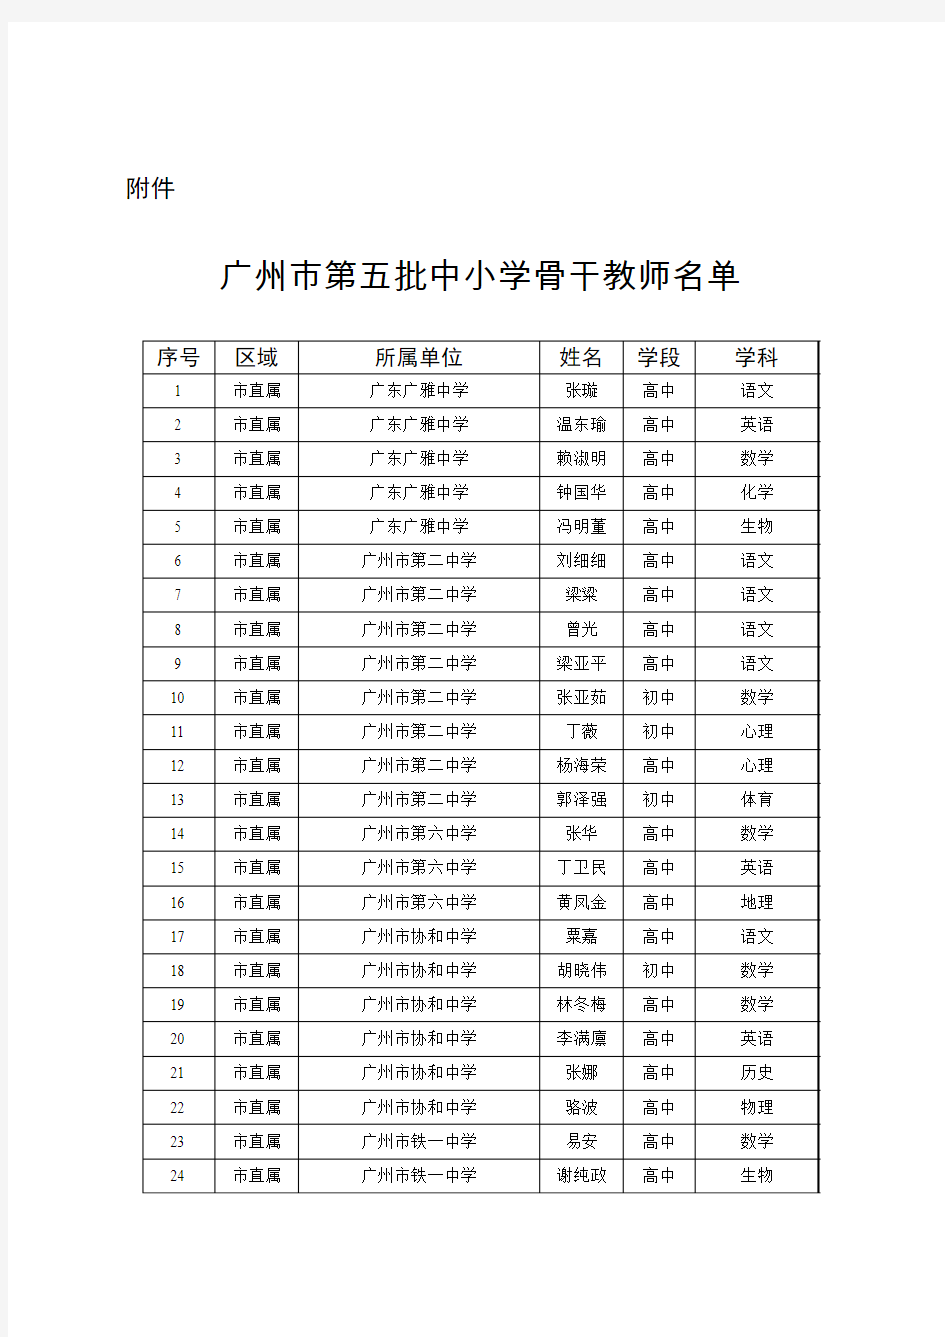 广州市第五批中小学骨干教师名单